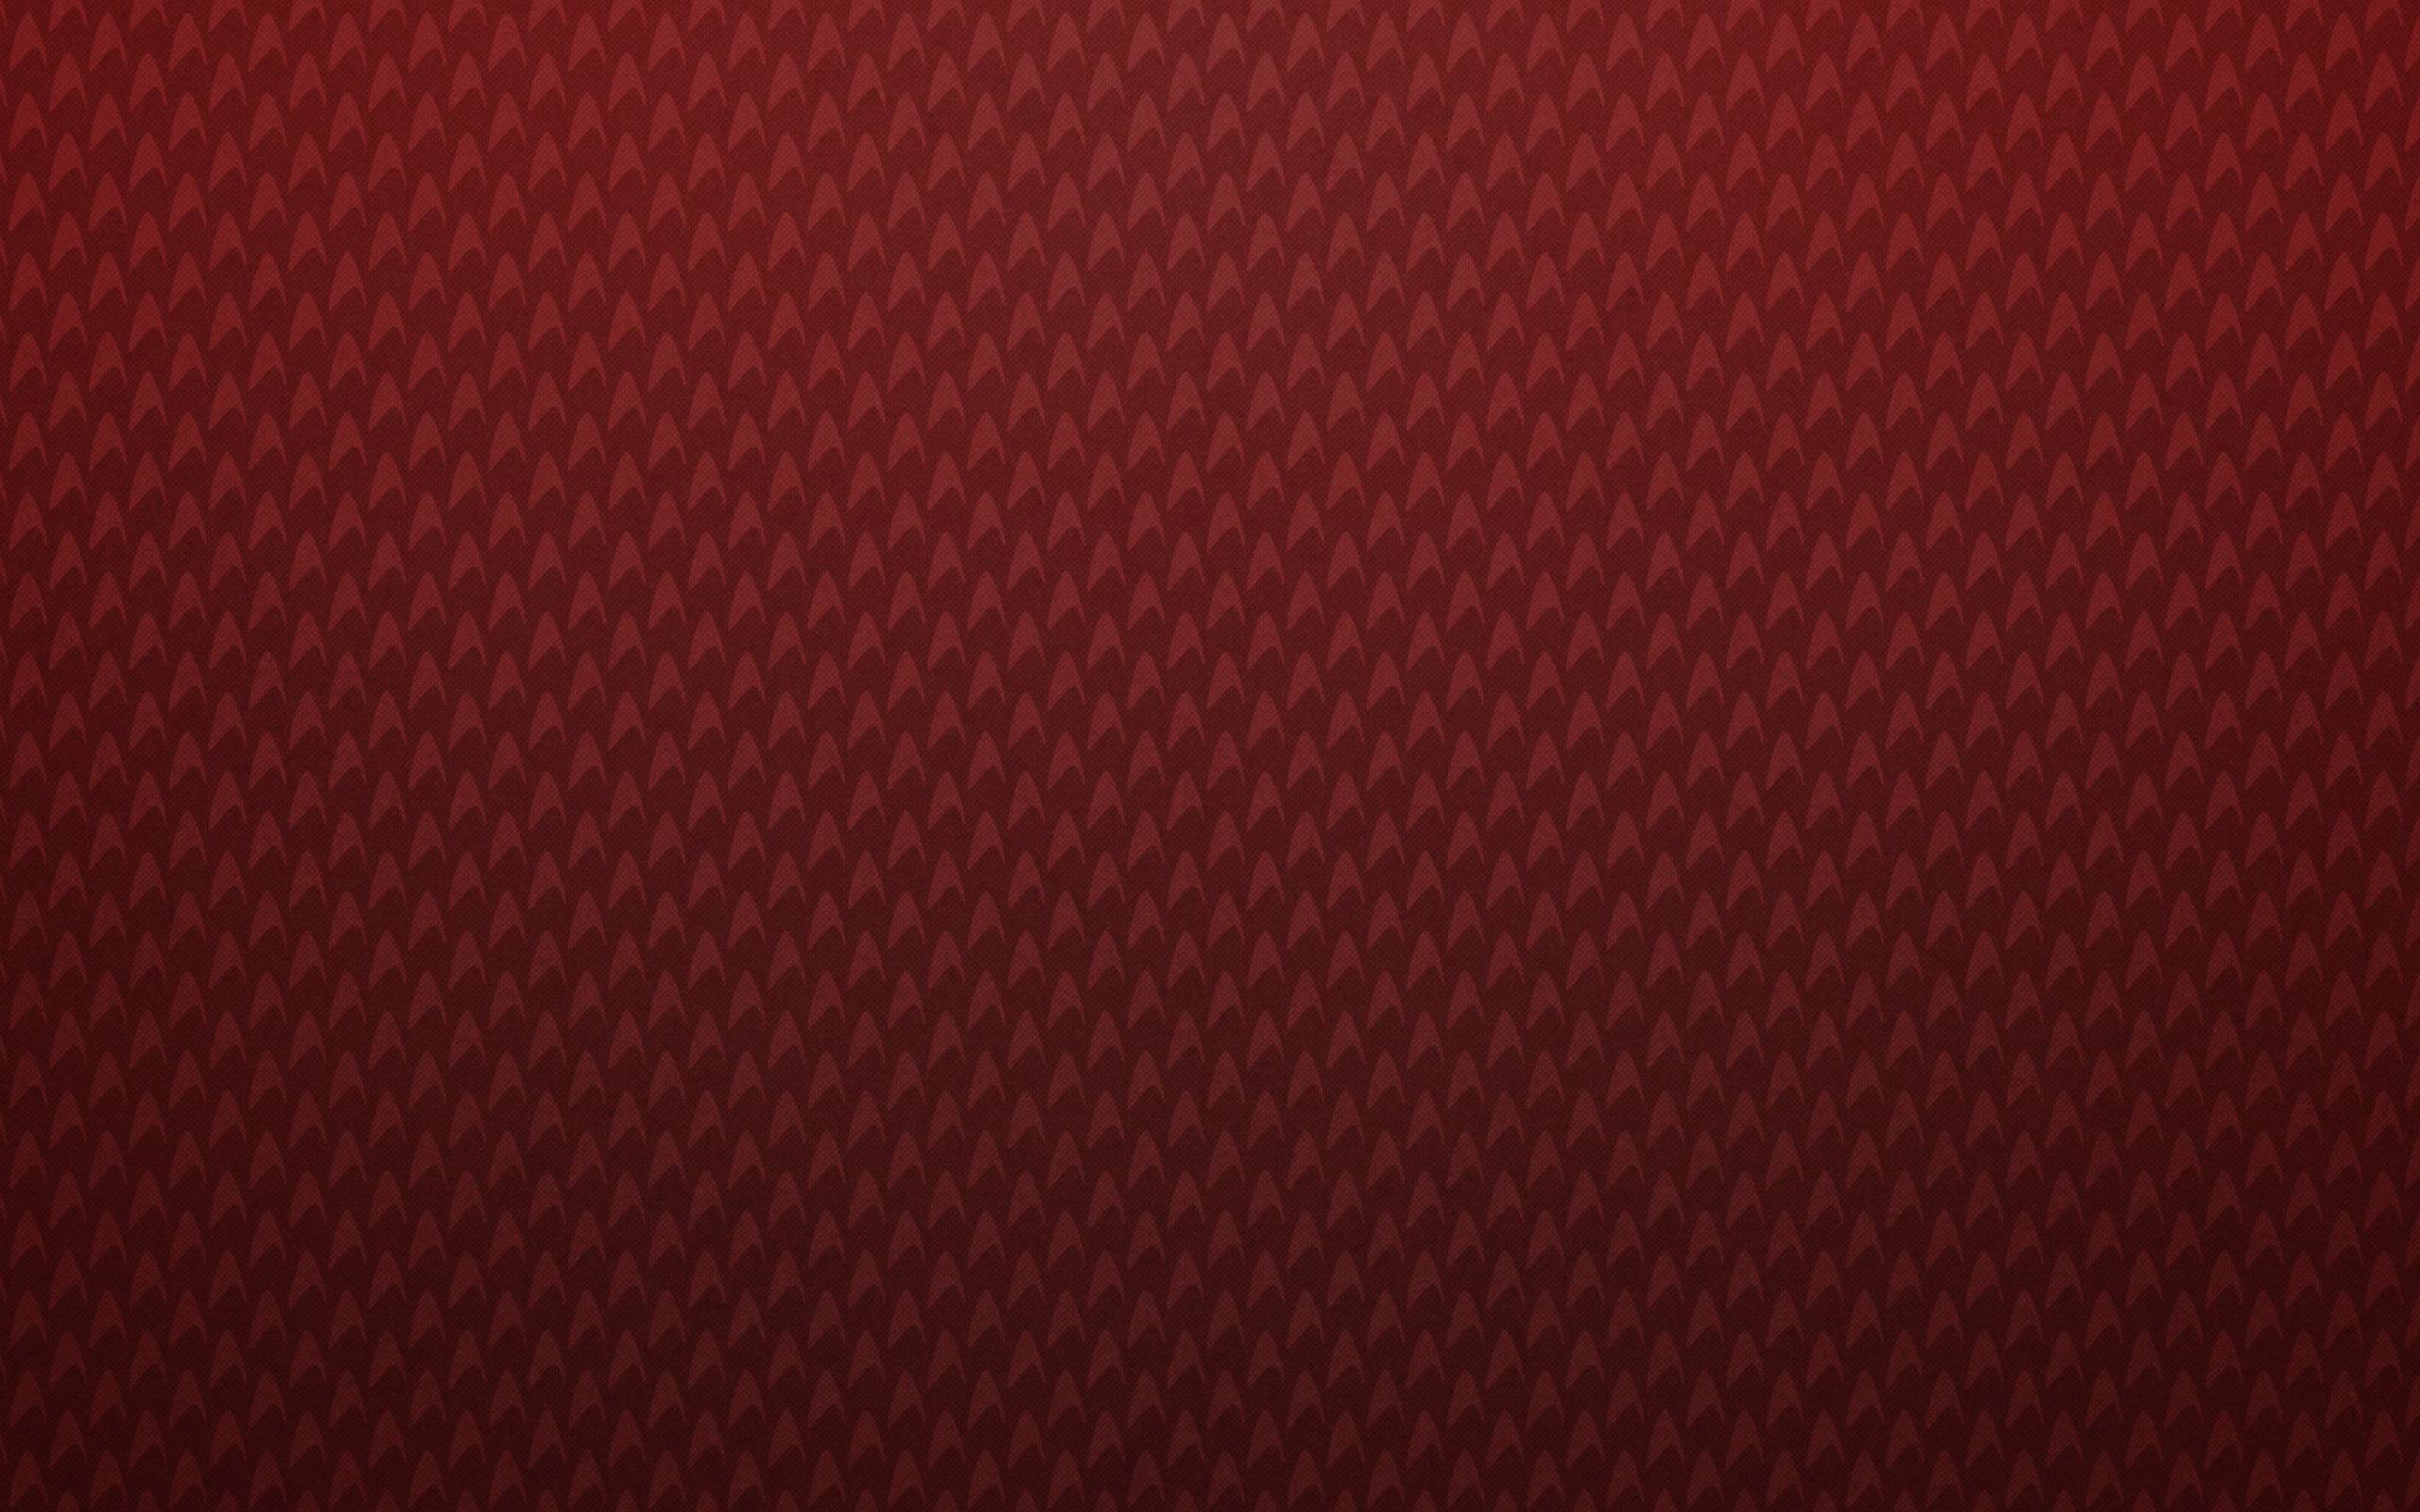 Best Textured Background 32 Textured Wallpaper Hd Free - Star Trek Red Background - HD Wallpaper 